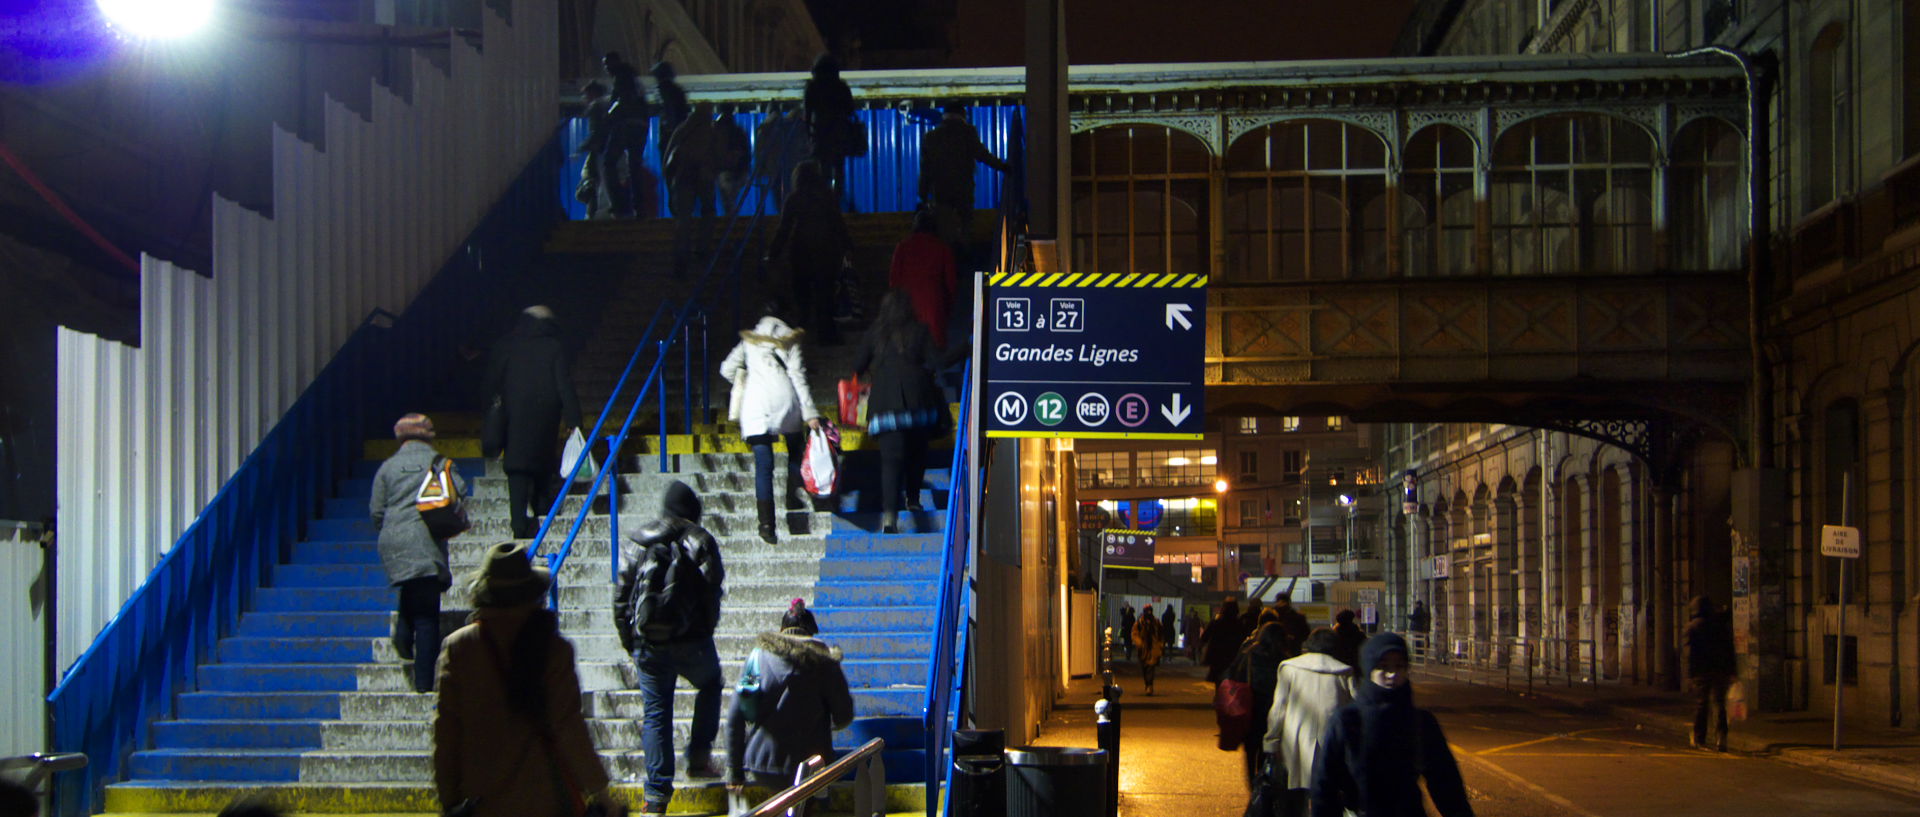 Photo de scène de rue, gare Saint-Lazare, Paris, rue Intérieure.